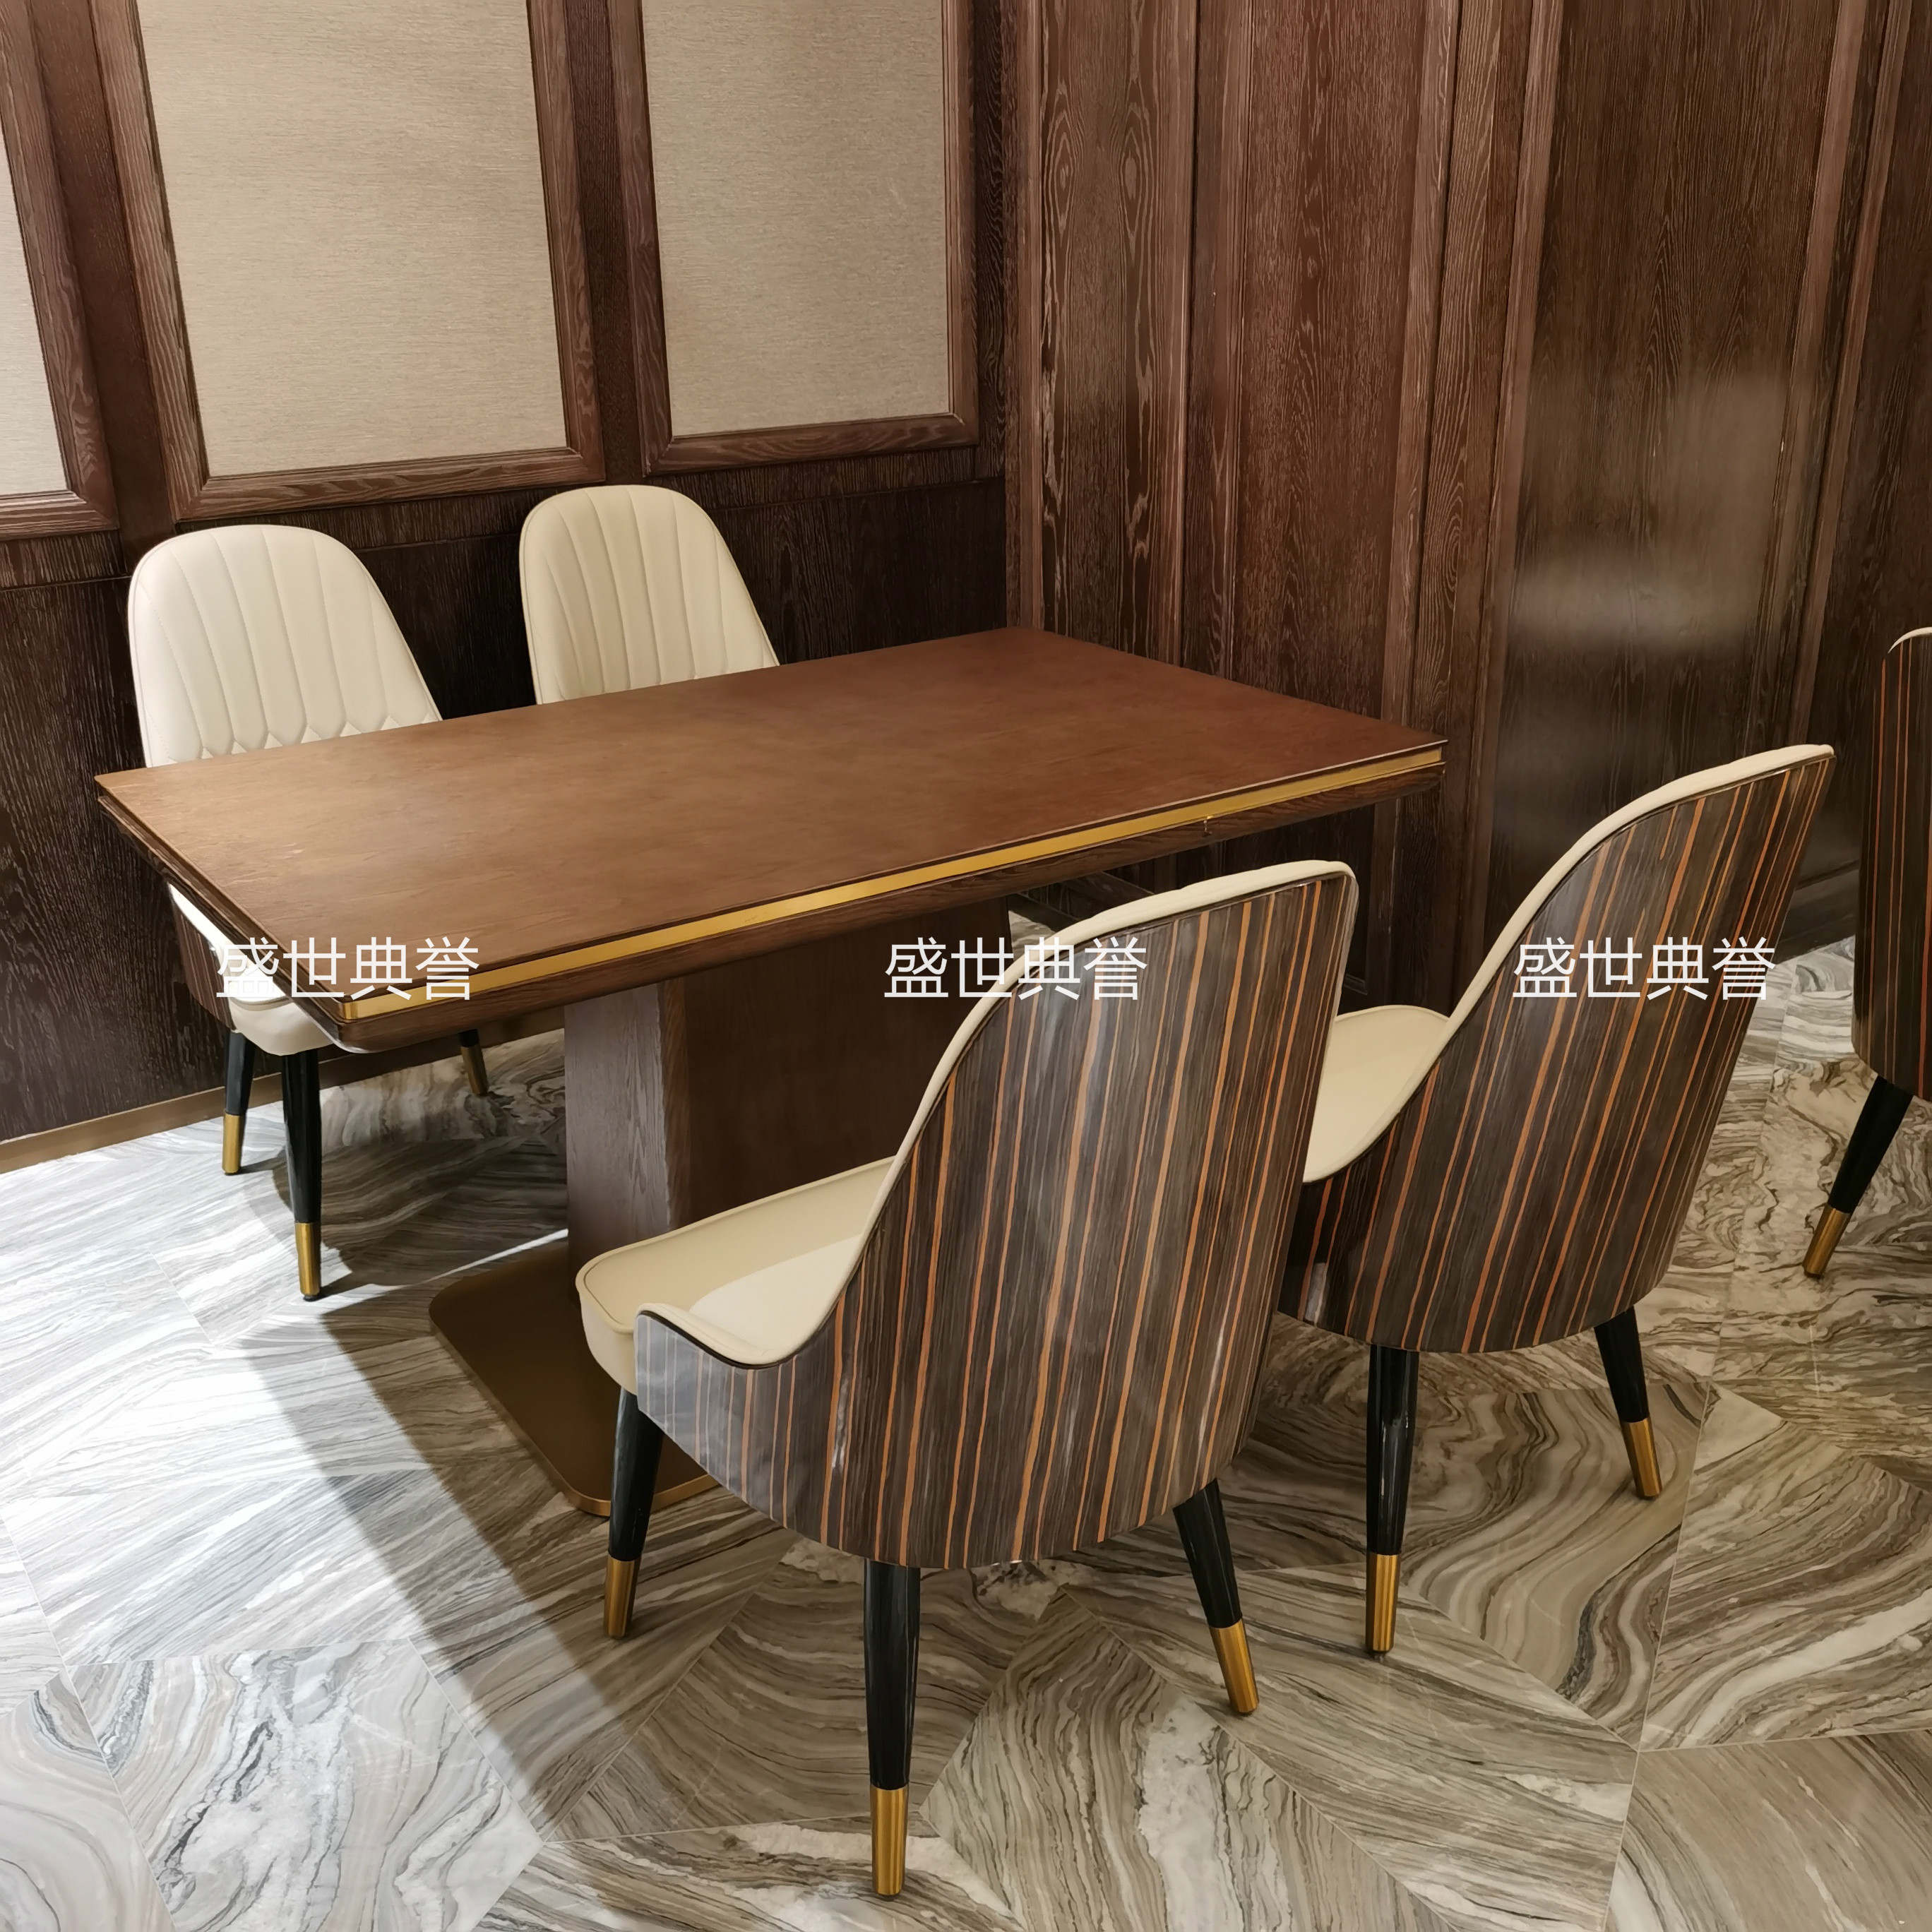 上海度假酒店西餐桌椅海鲜餐厅轻奢实木椅饭店自助餐厅实木餐桌椅详情图2